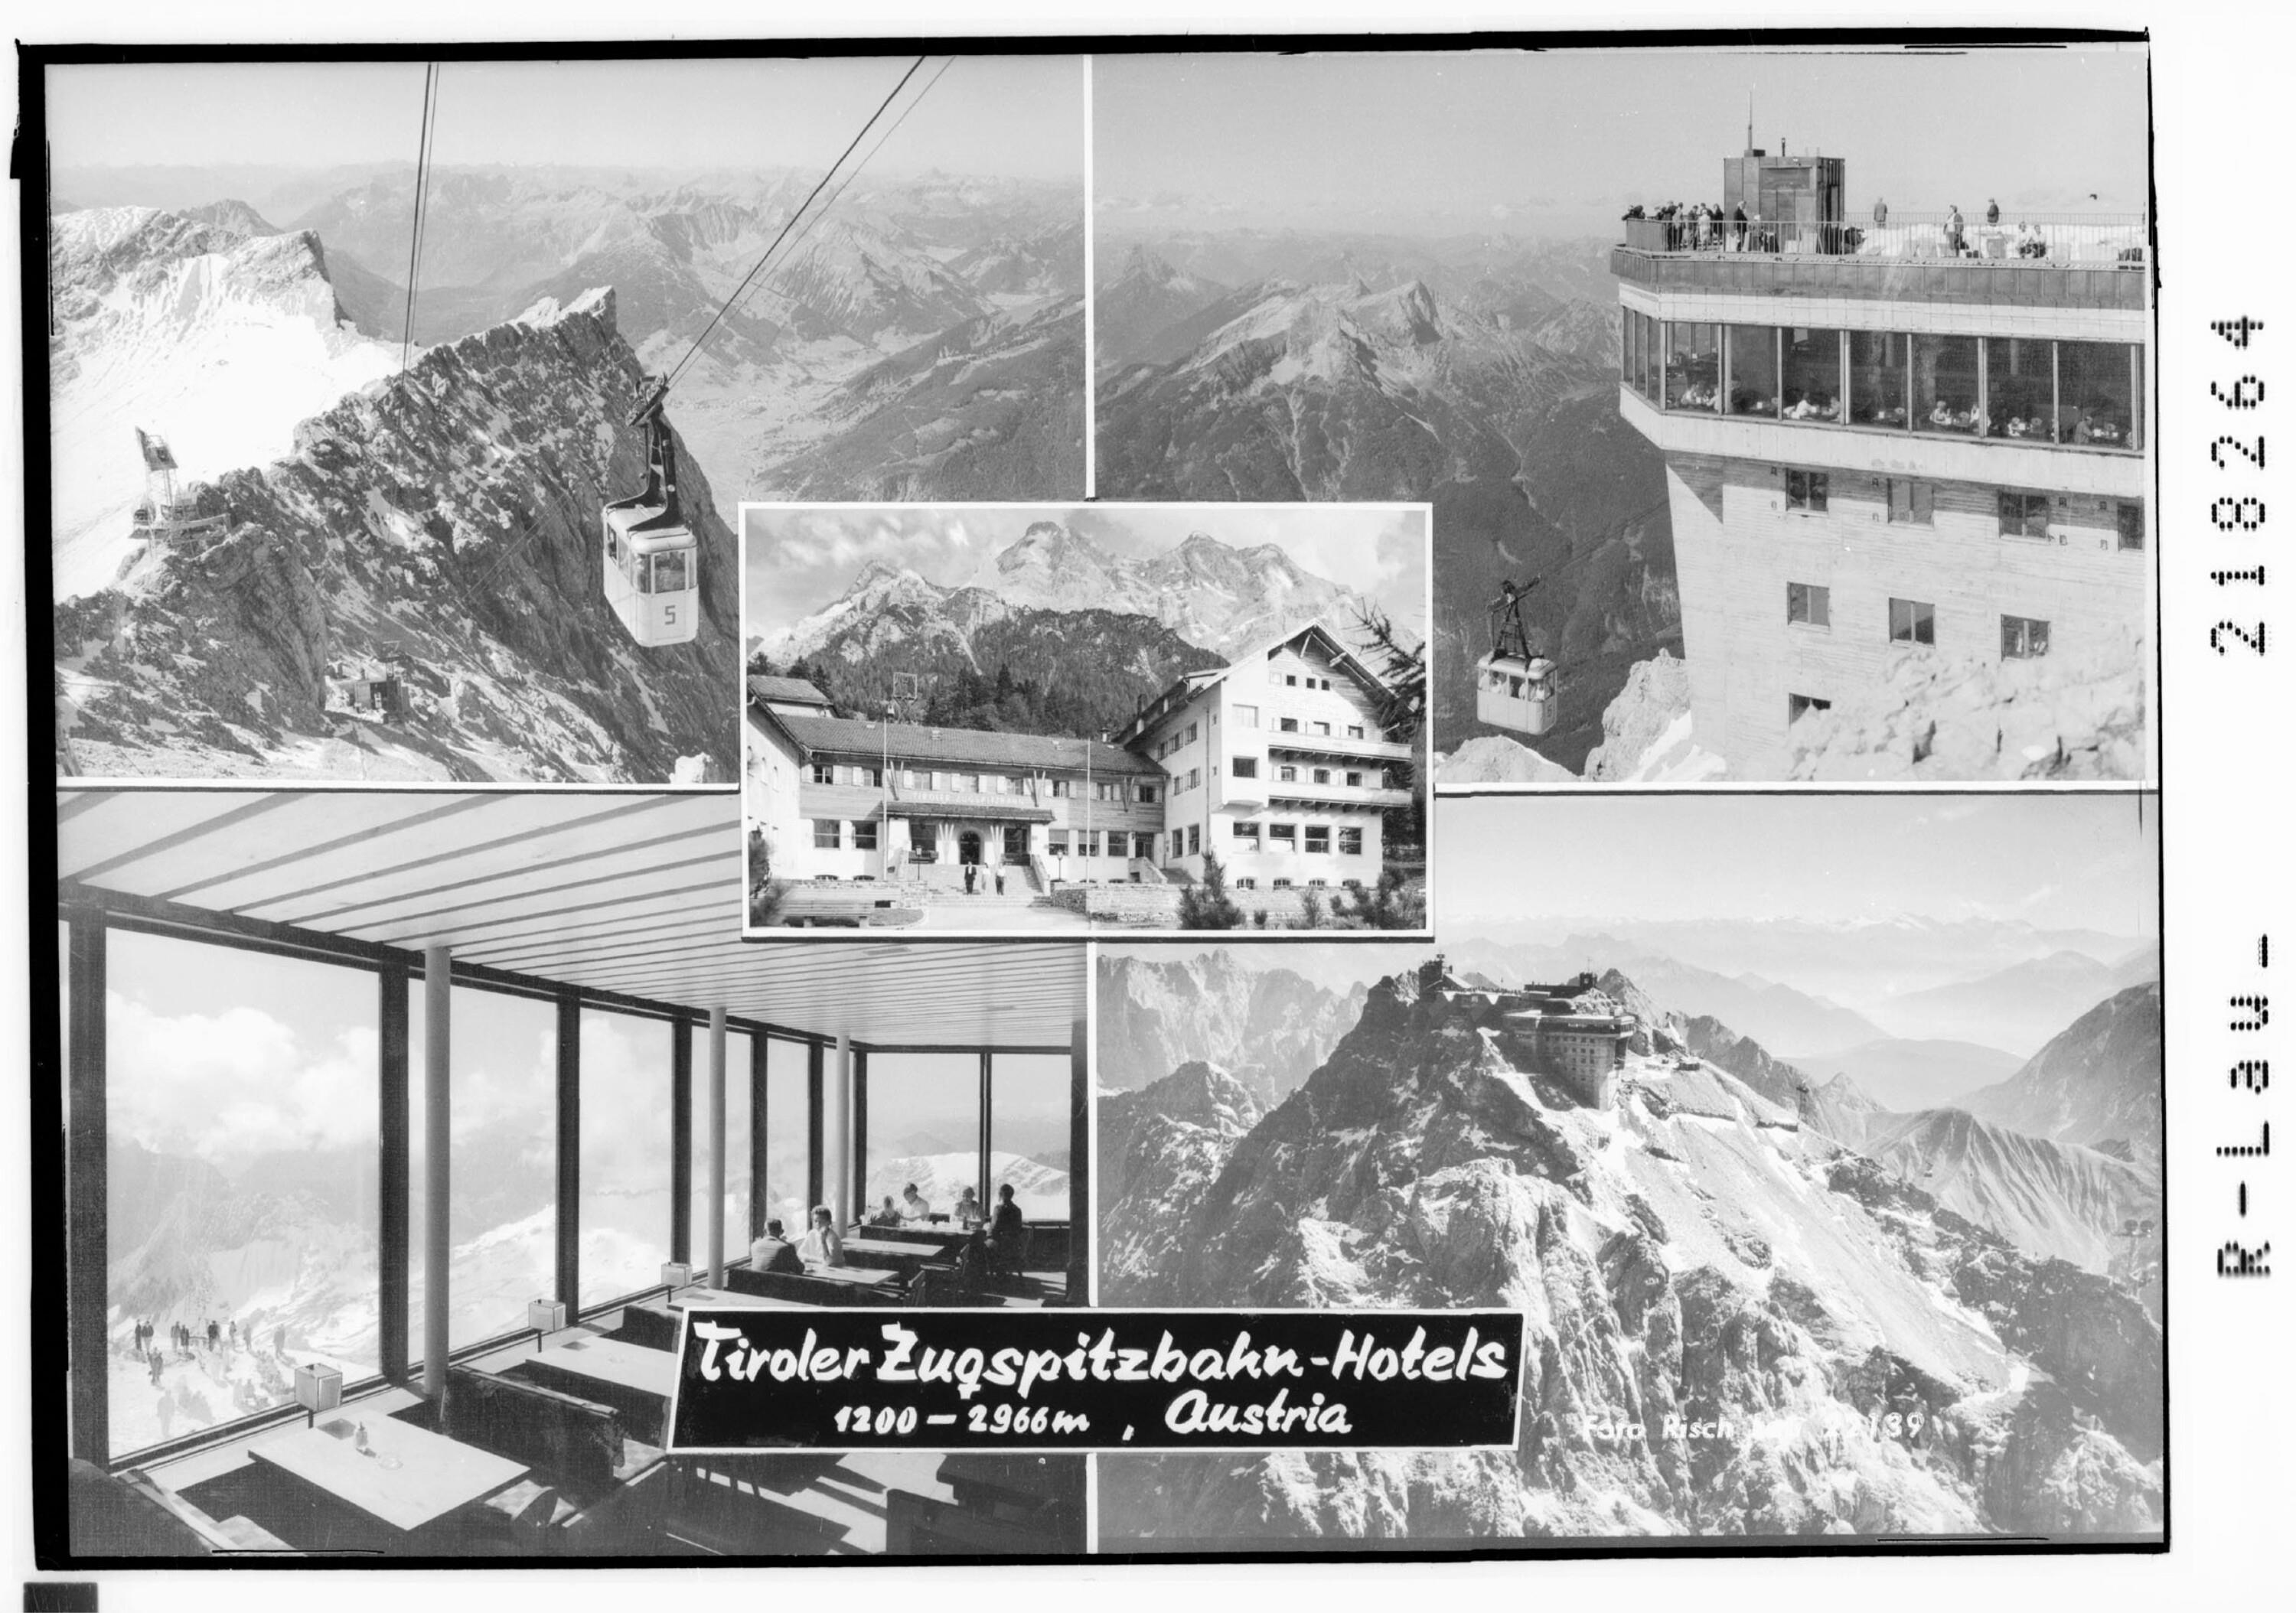 Tiroler Zugspitzbahn - Hotels 1200 m, Austria></div>


    <hr>
    <div class=